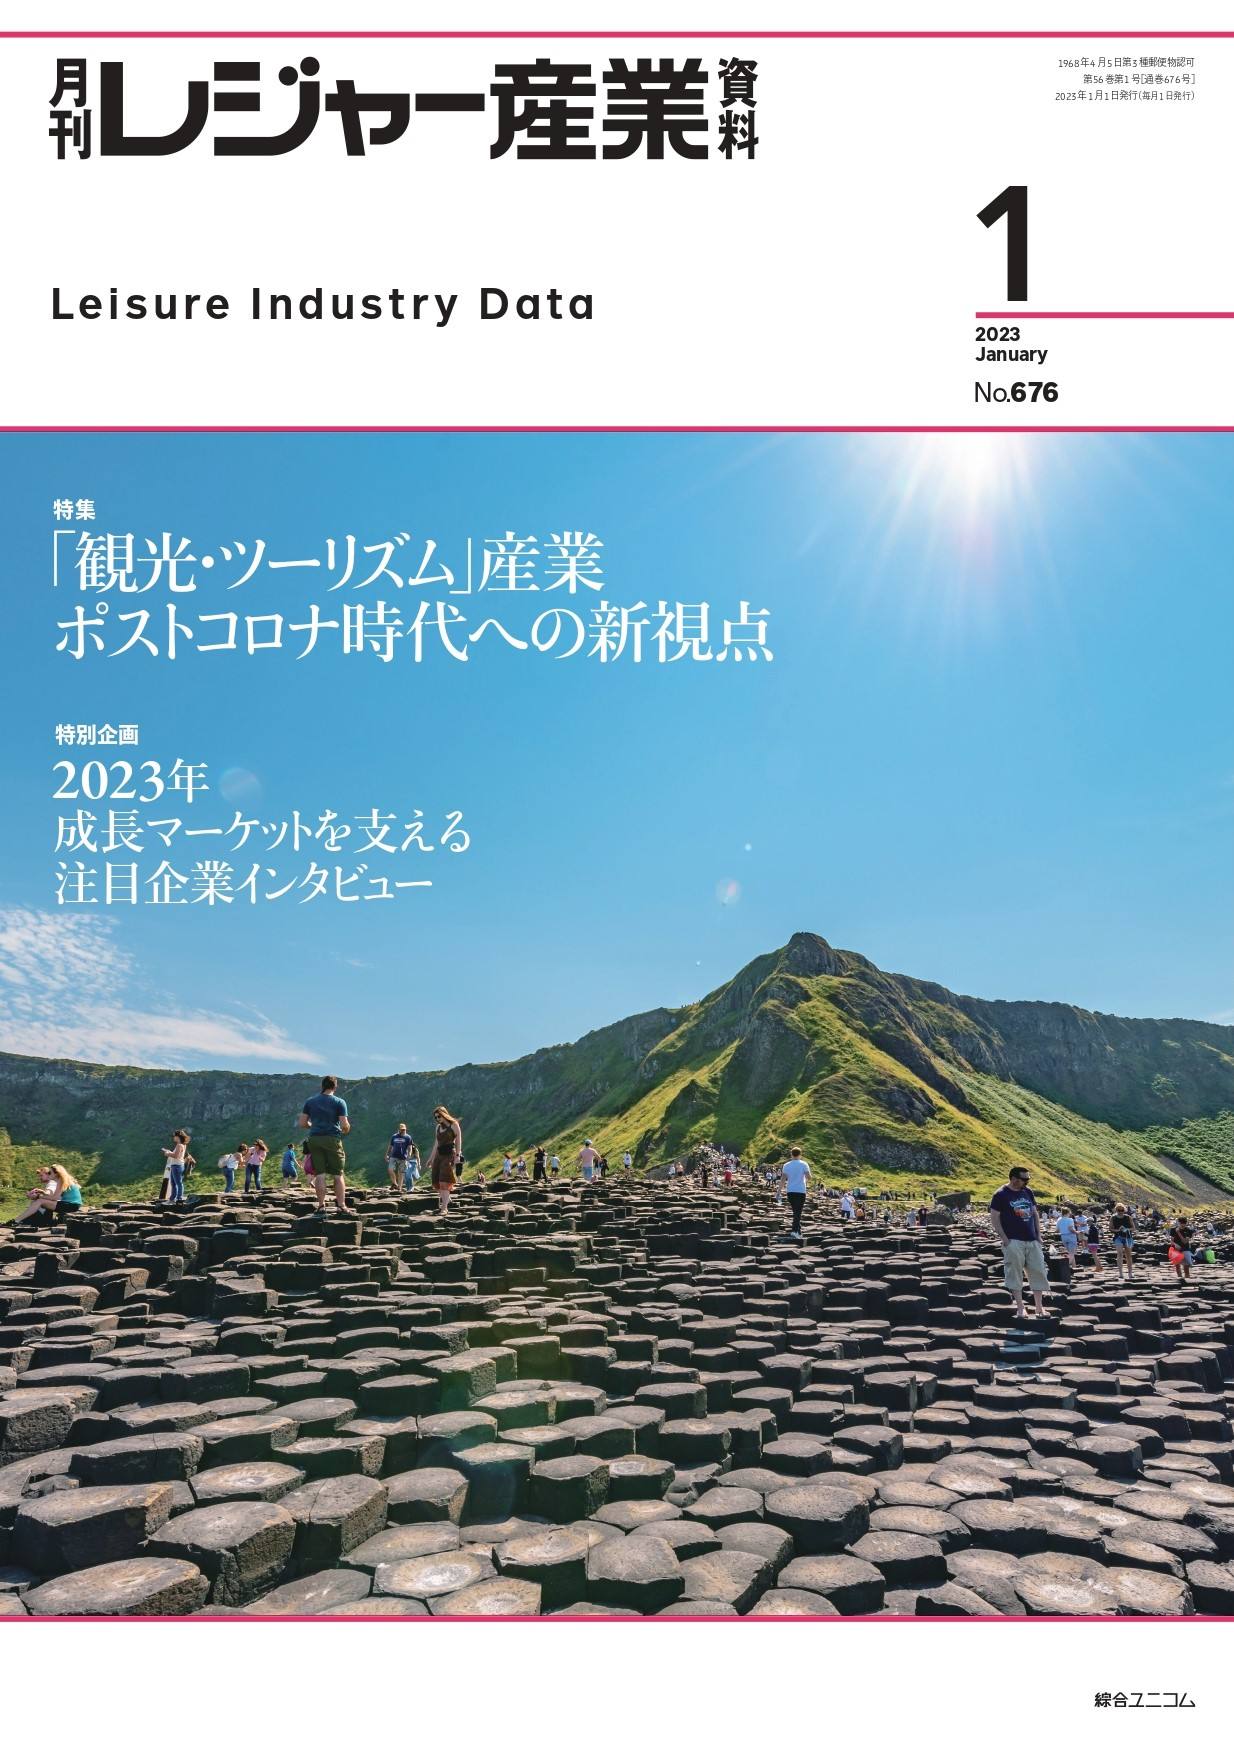 月刊レジャー産業資料 2023年1月号
「観光・ツーリズム」産業